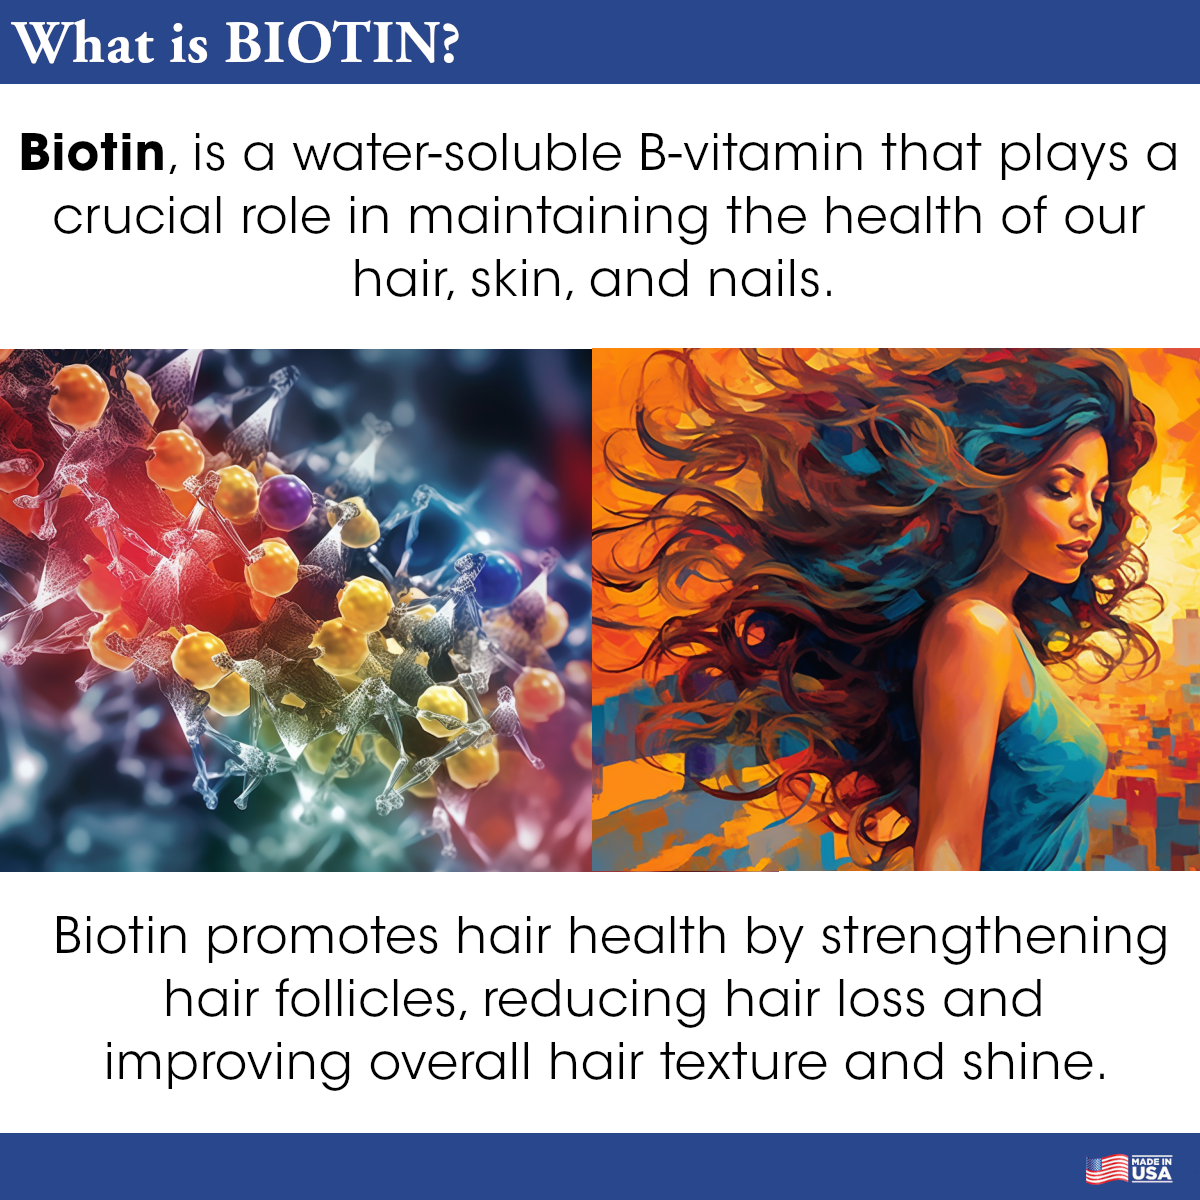 Difeel Biotin Premium Hair Oil 7.1 oz. (PACK OF 2)